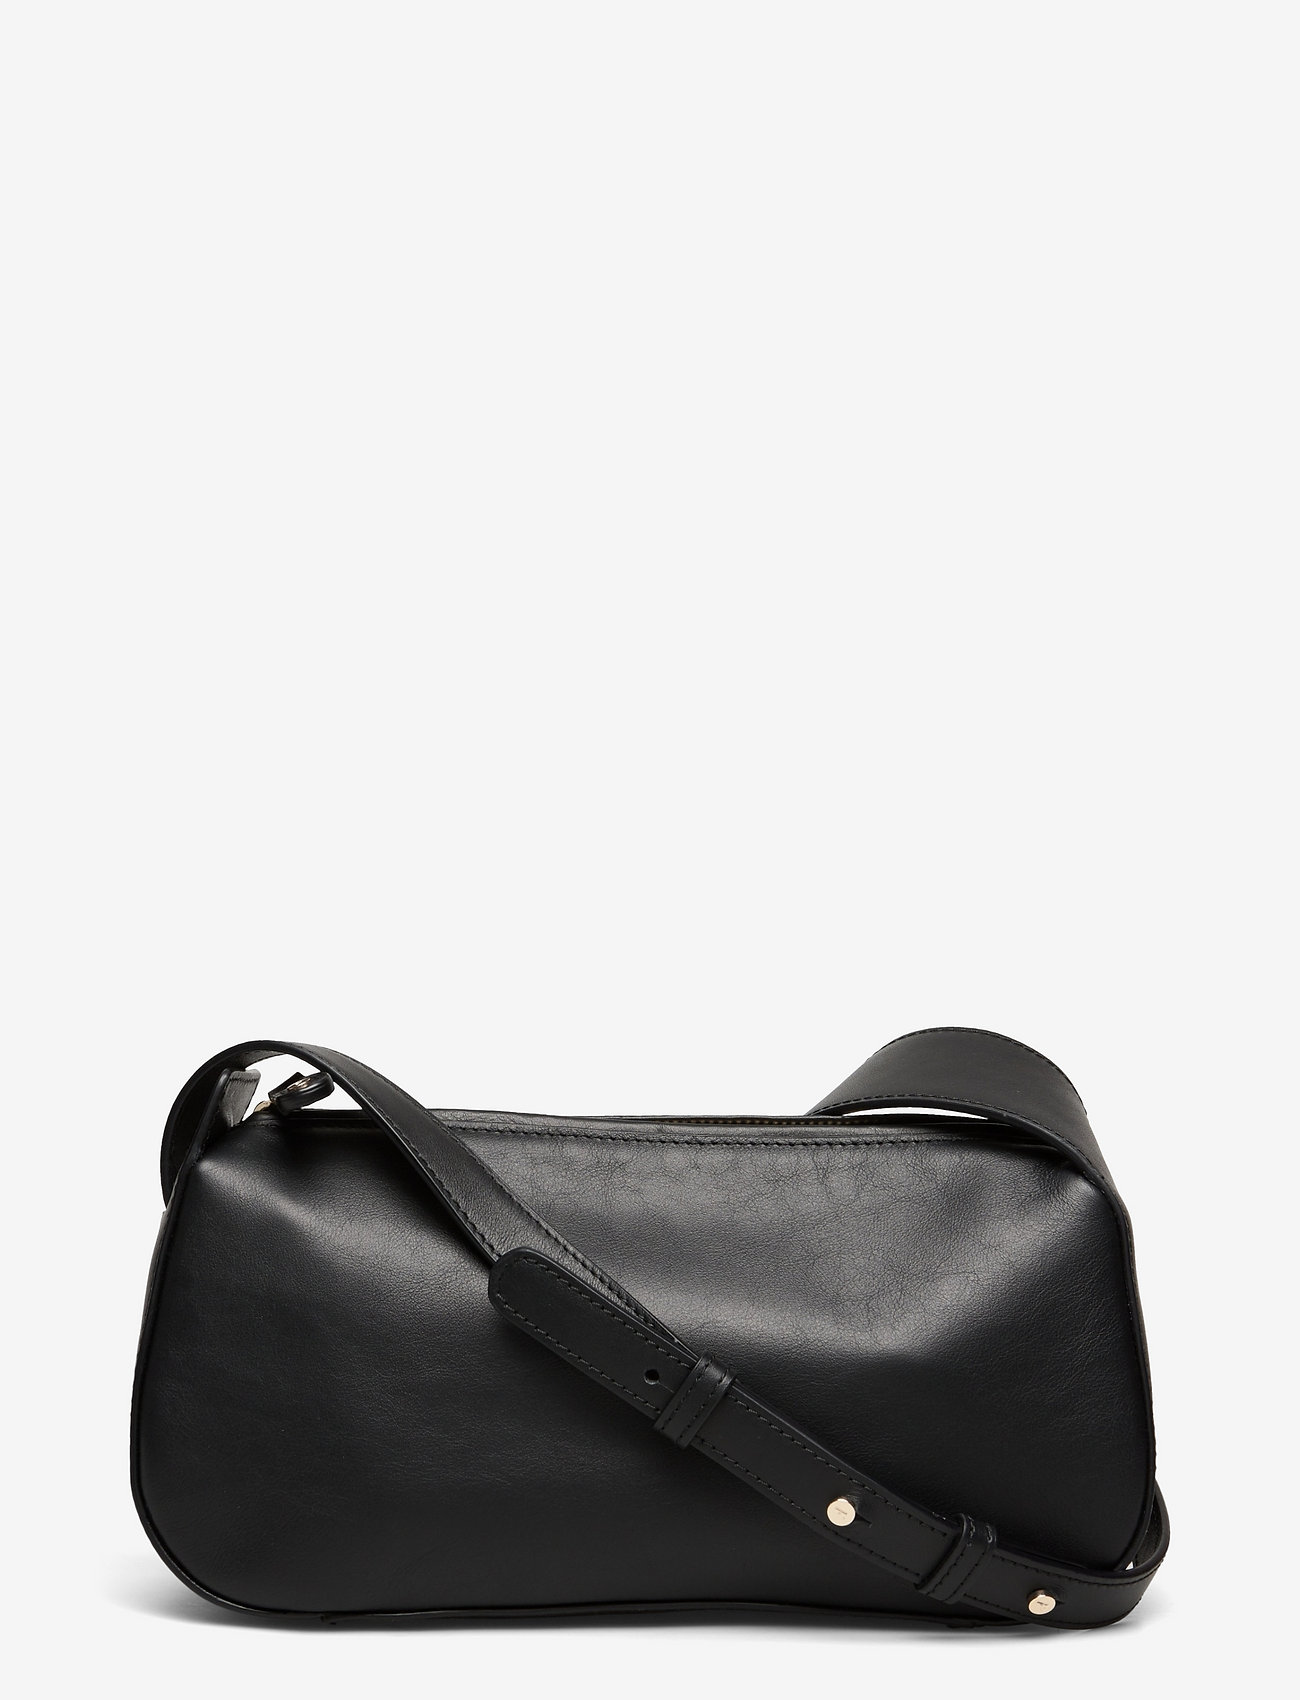 Flattered Bags Tuna Shoulderbag Black Leather - Shoulder bags | Boozt.com